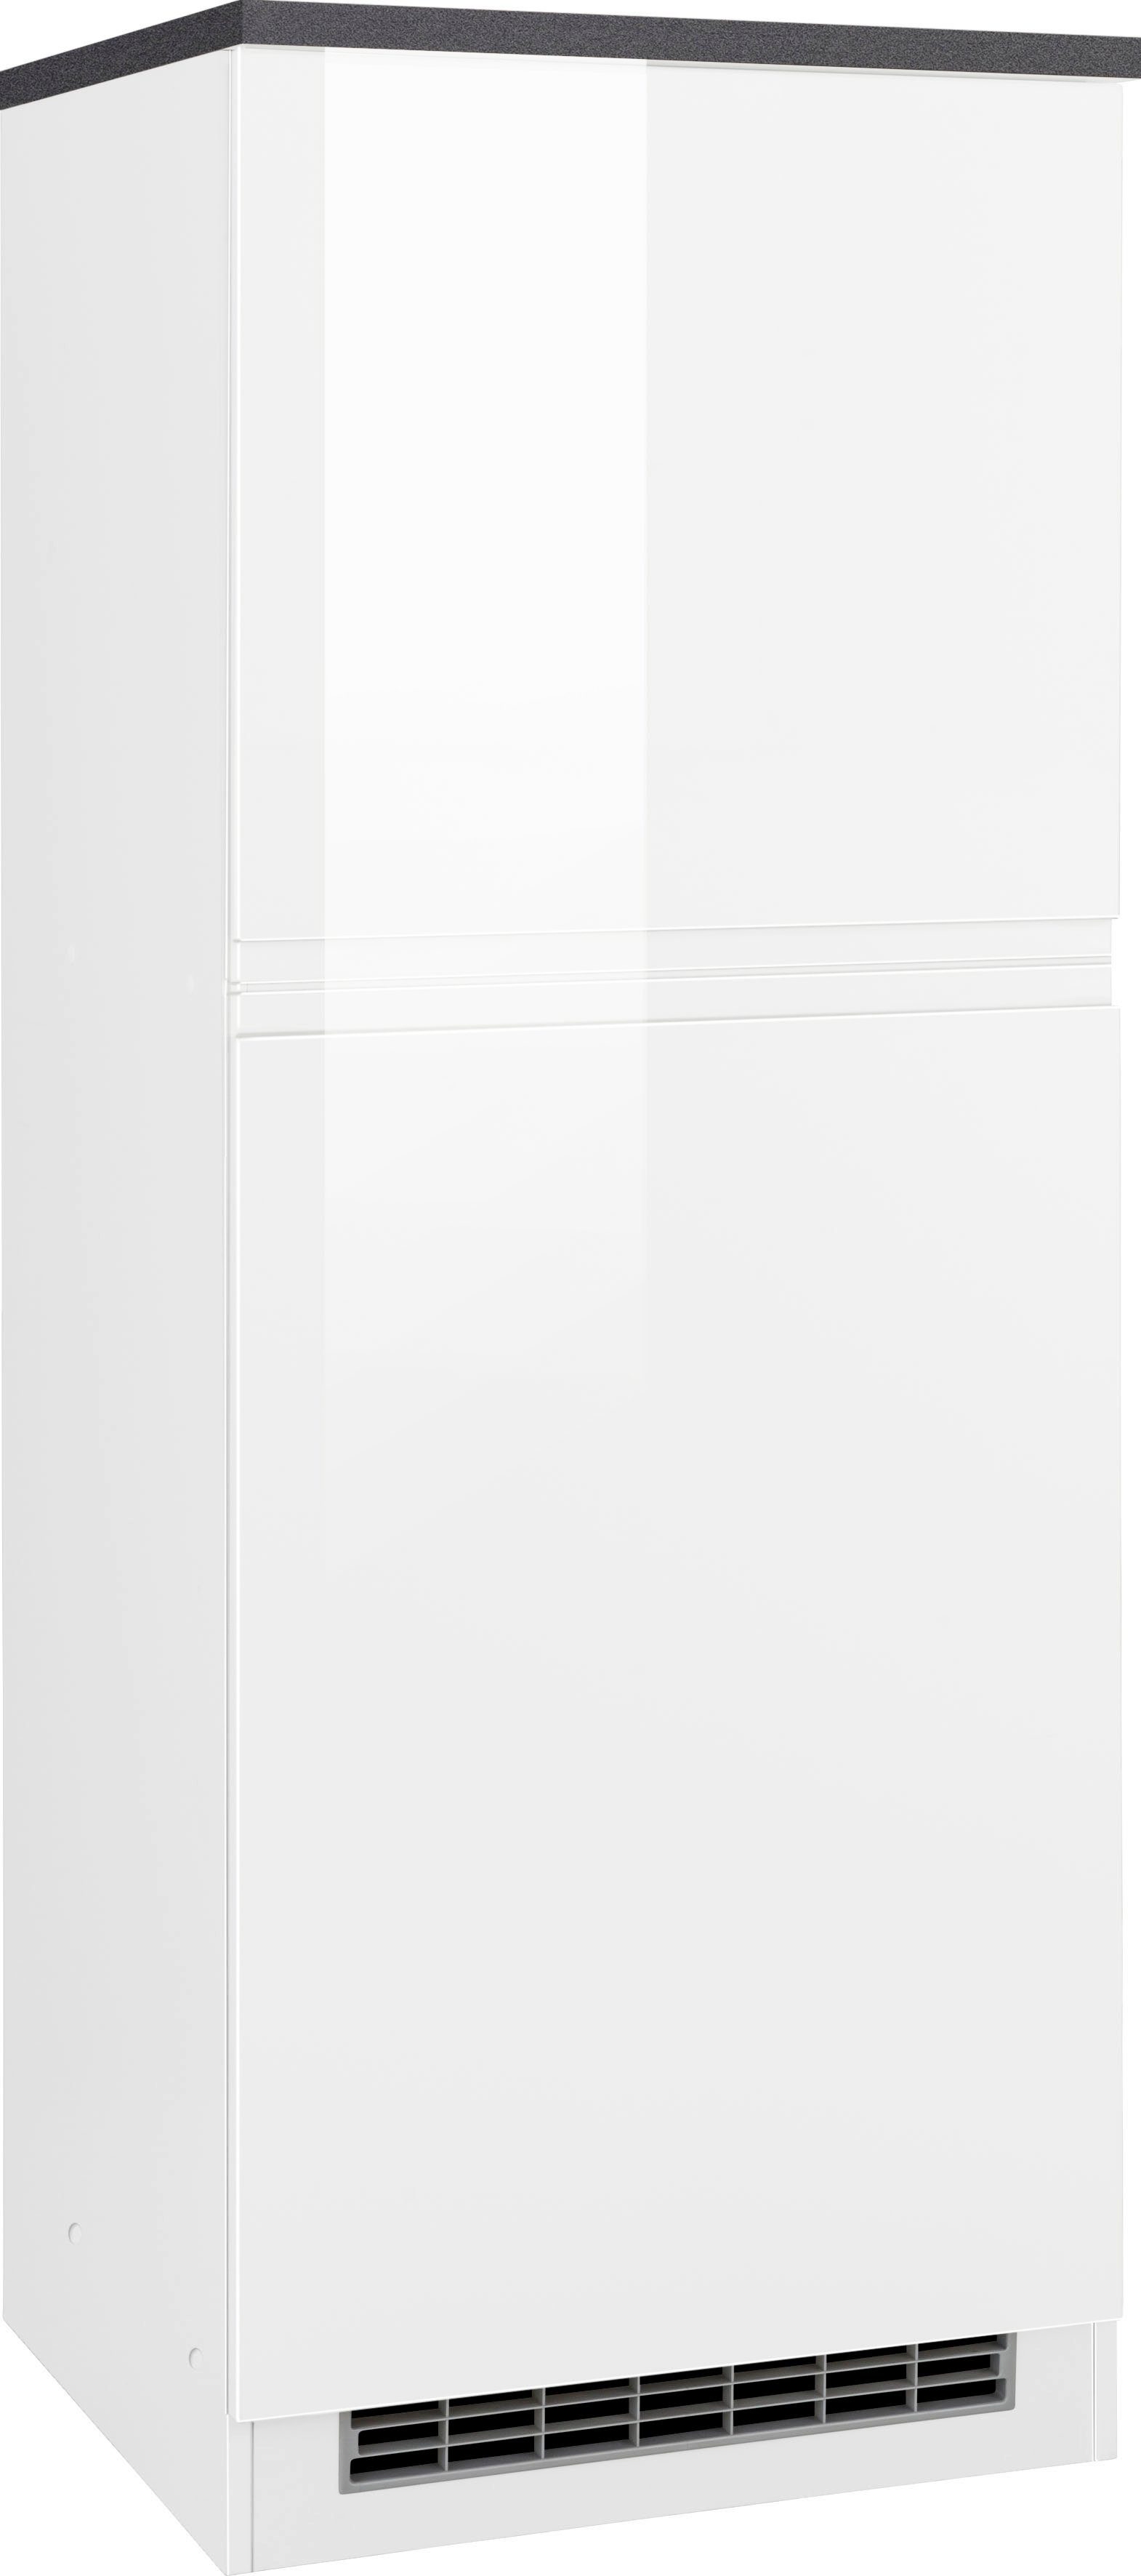 HELD MÖBEL Kühlumbauschrank Virginia 165 cm hoch, 60 cm breit, Nische für Kühlschrank: 56/88/55 cm, 2 Türen weiß Hochglanz/anthrazit | weiß